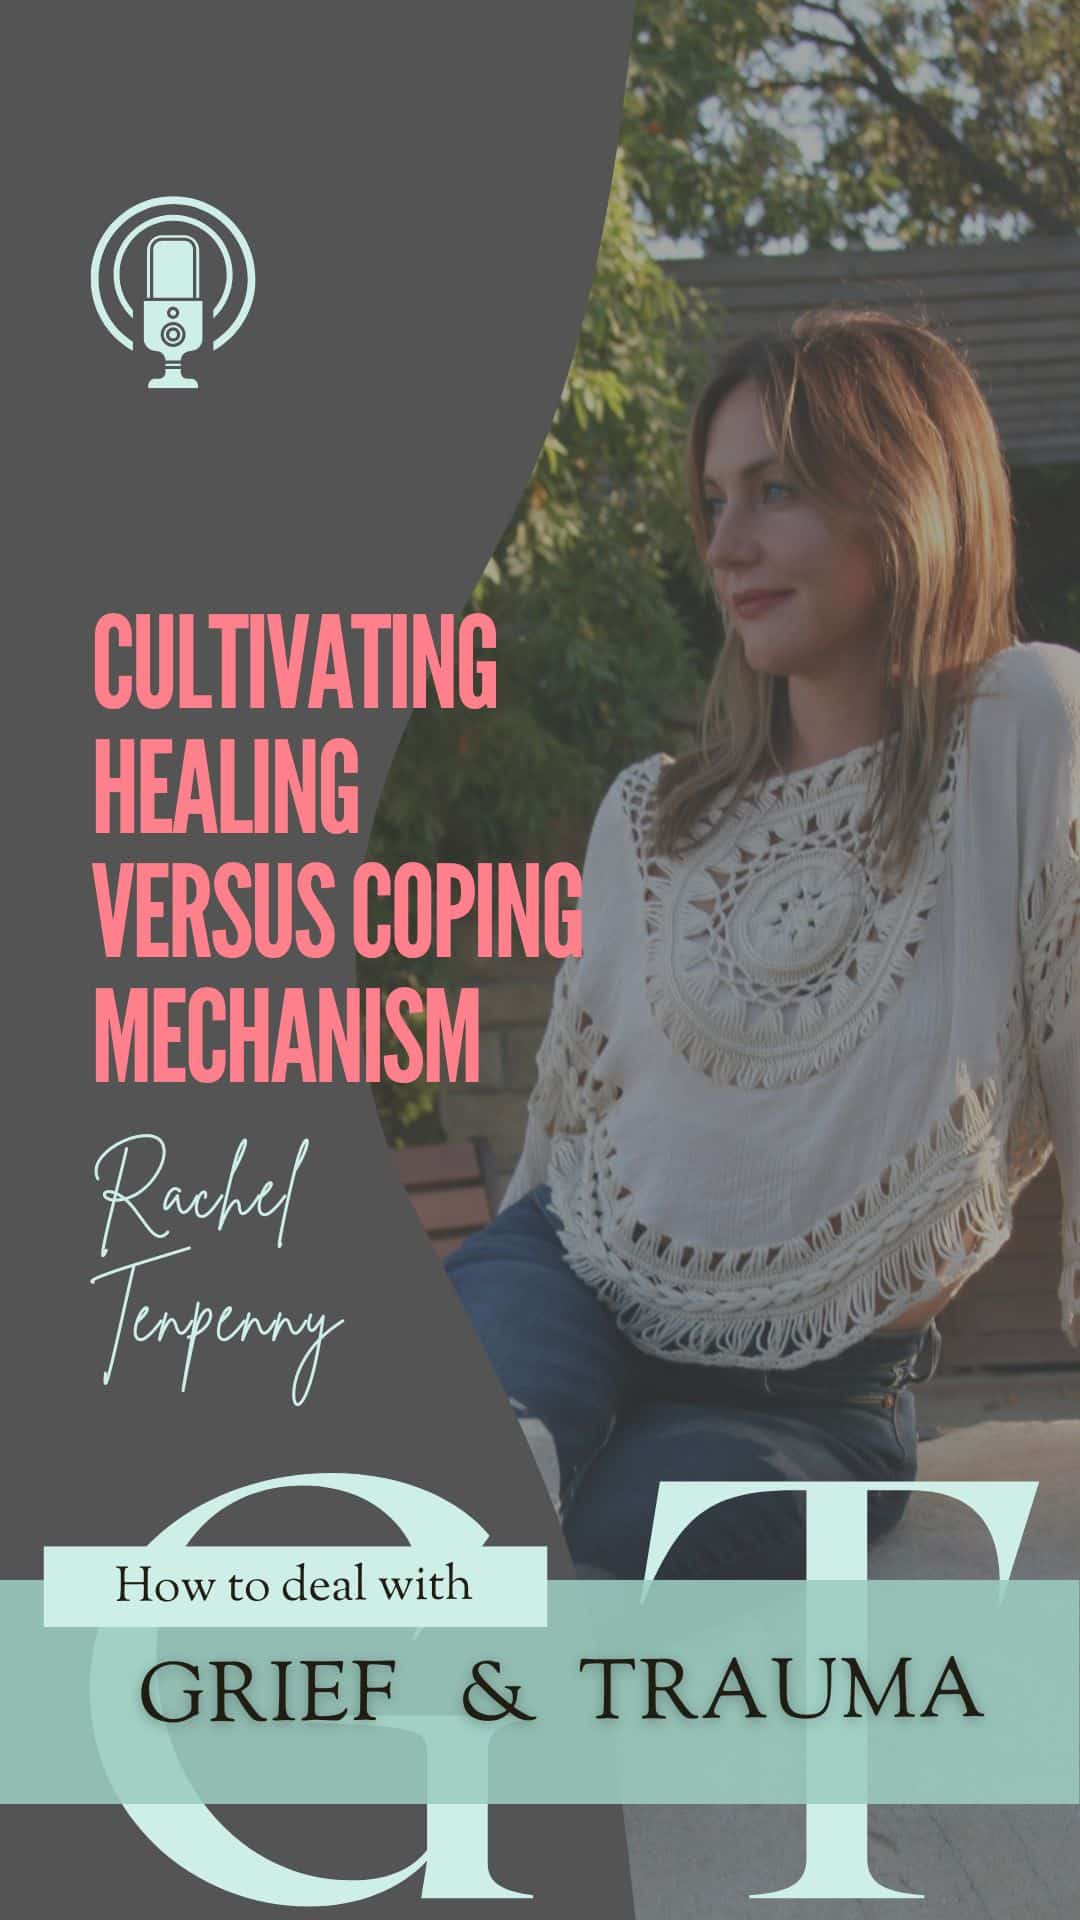 50 Rachel Tenpenny Cultivating Healing Versus Coping Mechanism